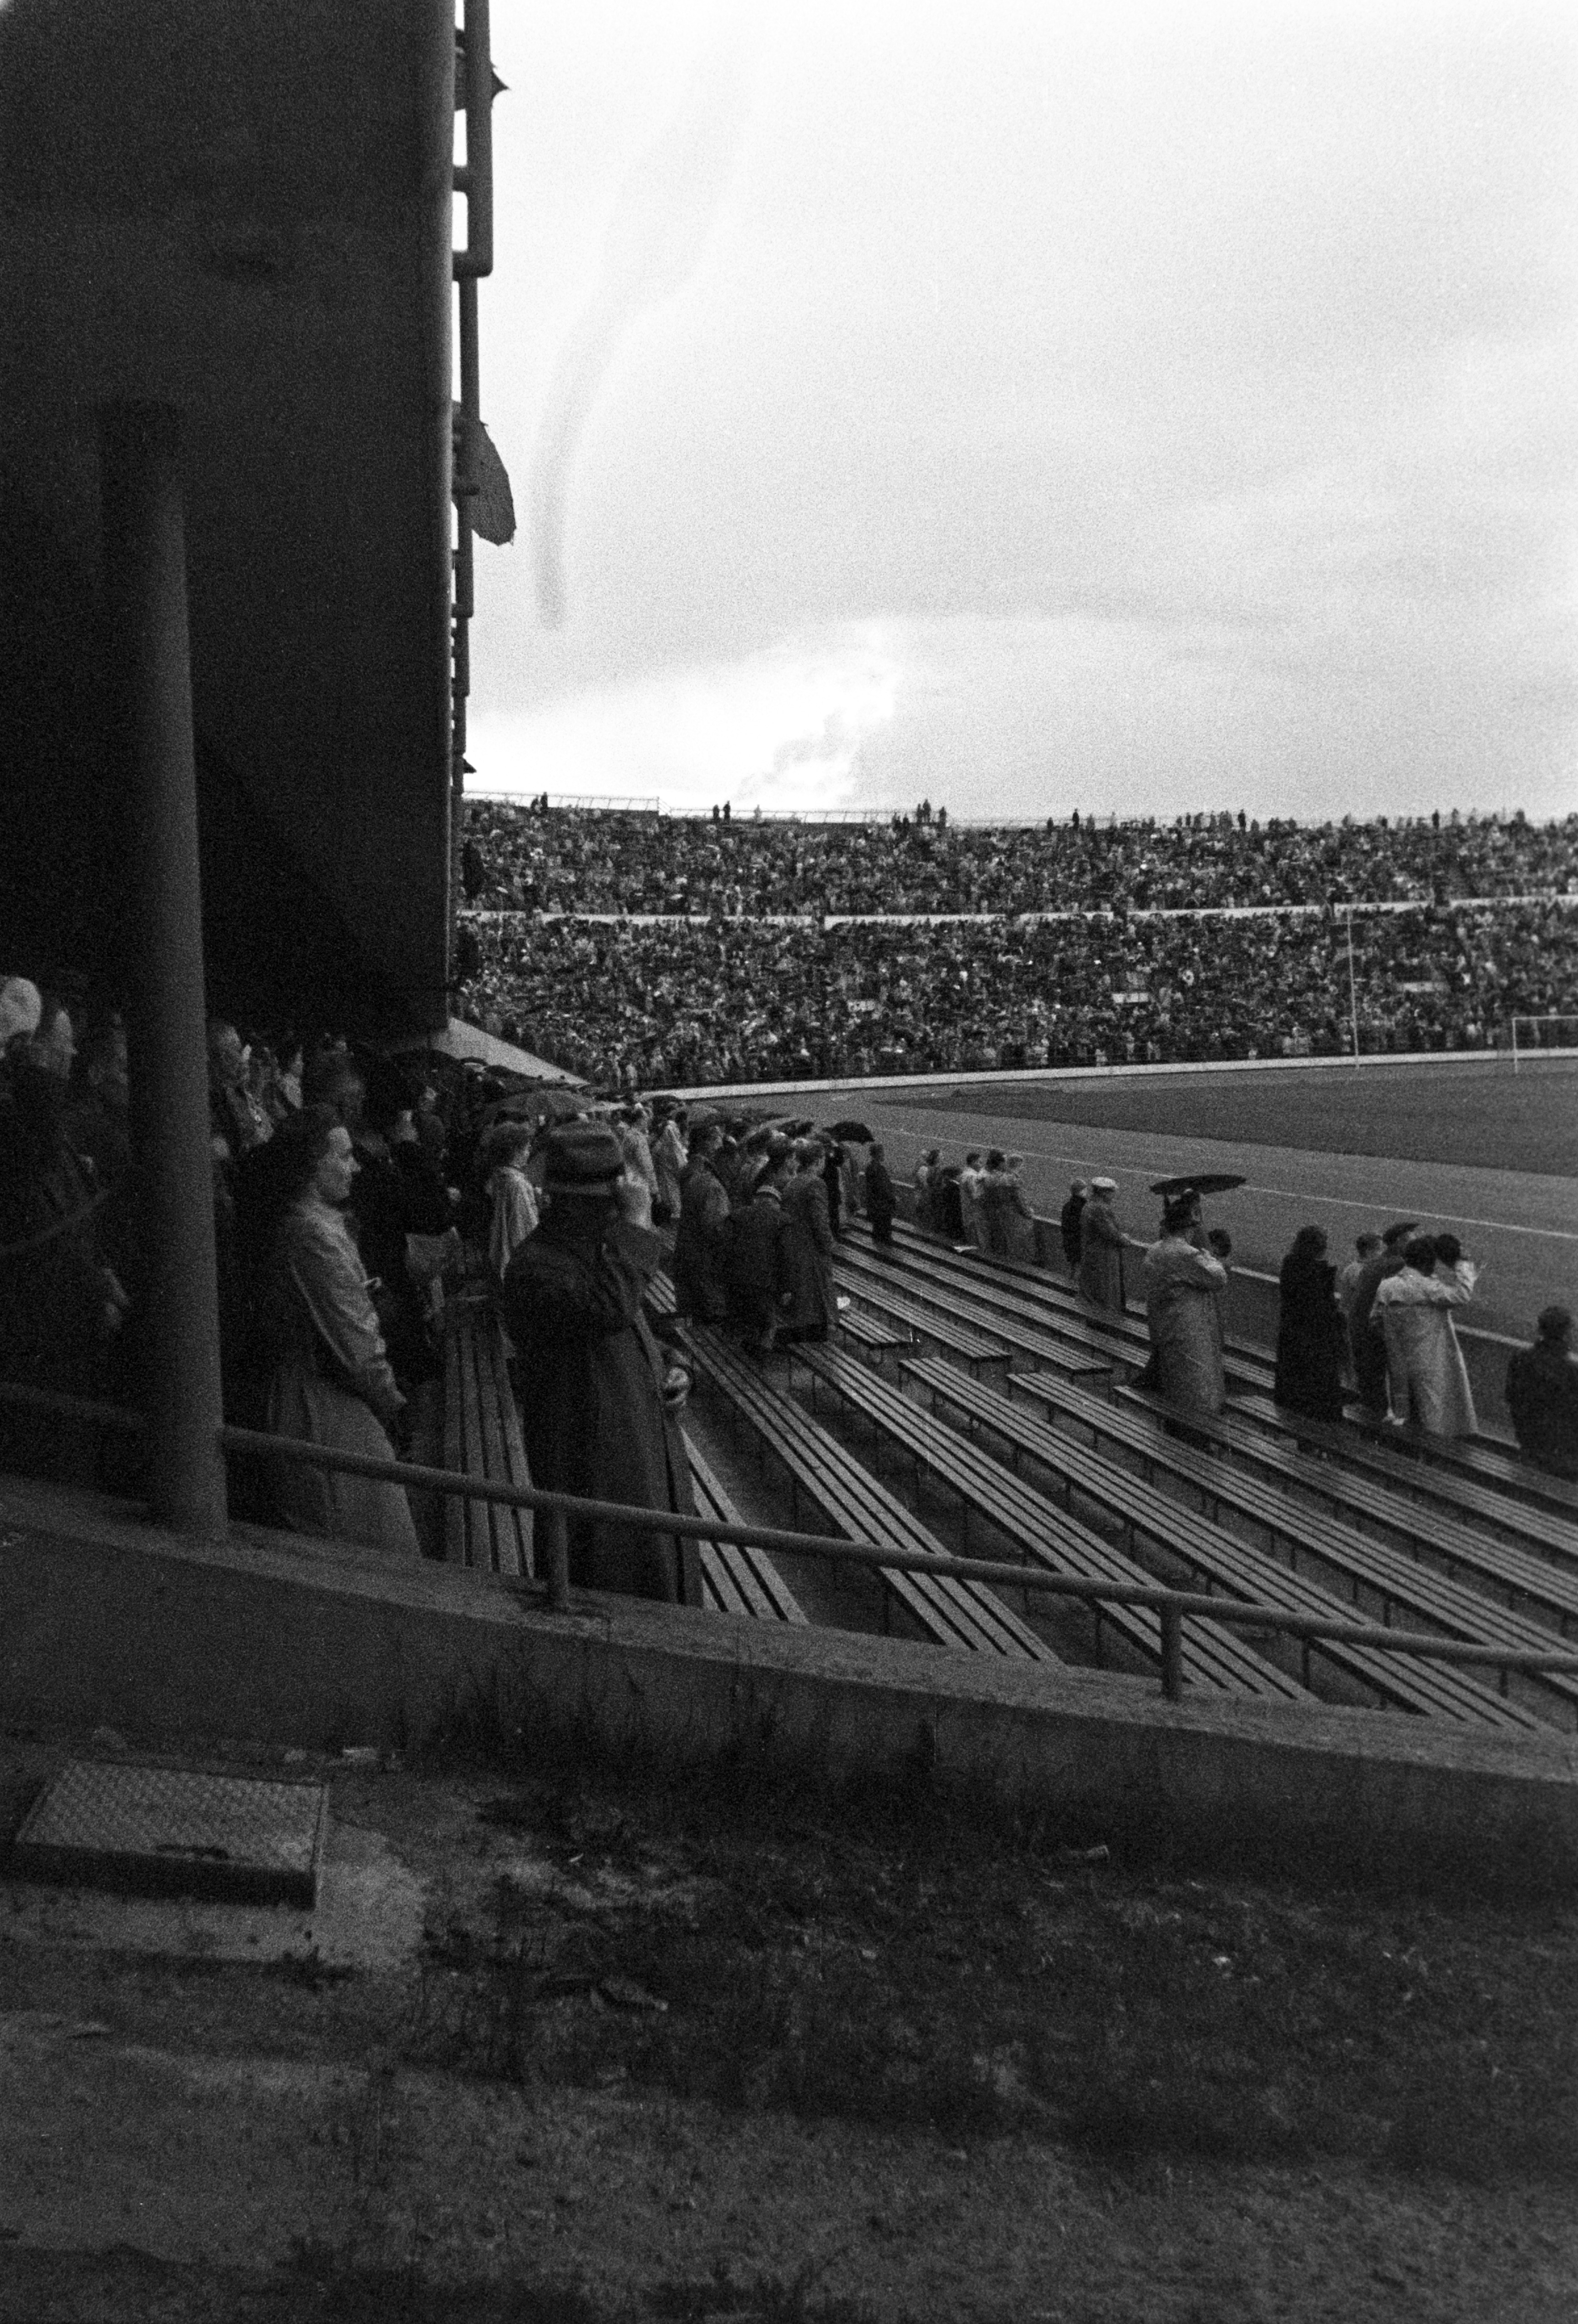 Olympiastadion Helsingin 400-vuotisjuhlien aikaan. Yleisö katsomossa noussut seisomaan, osa nostaa hattua.